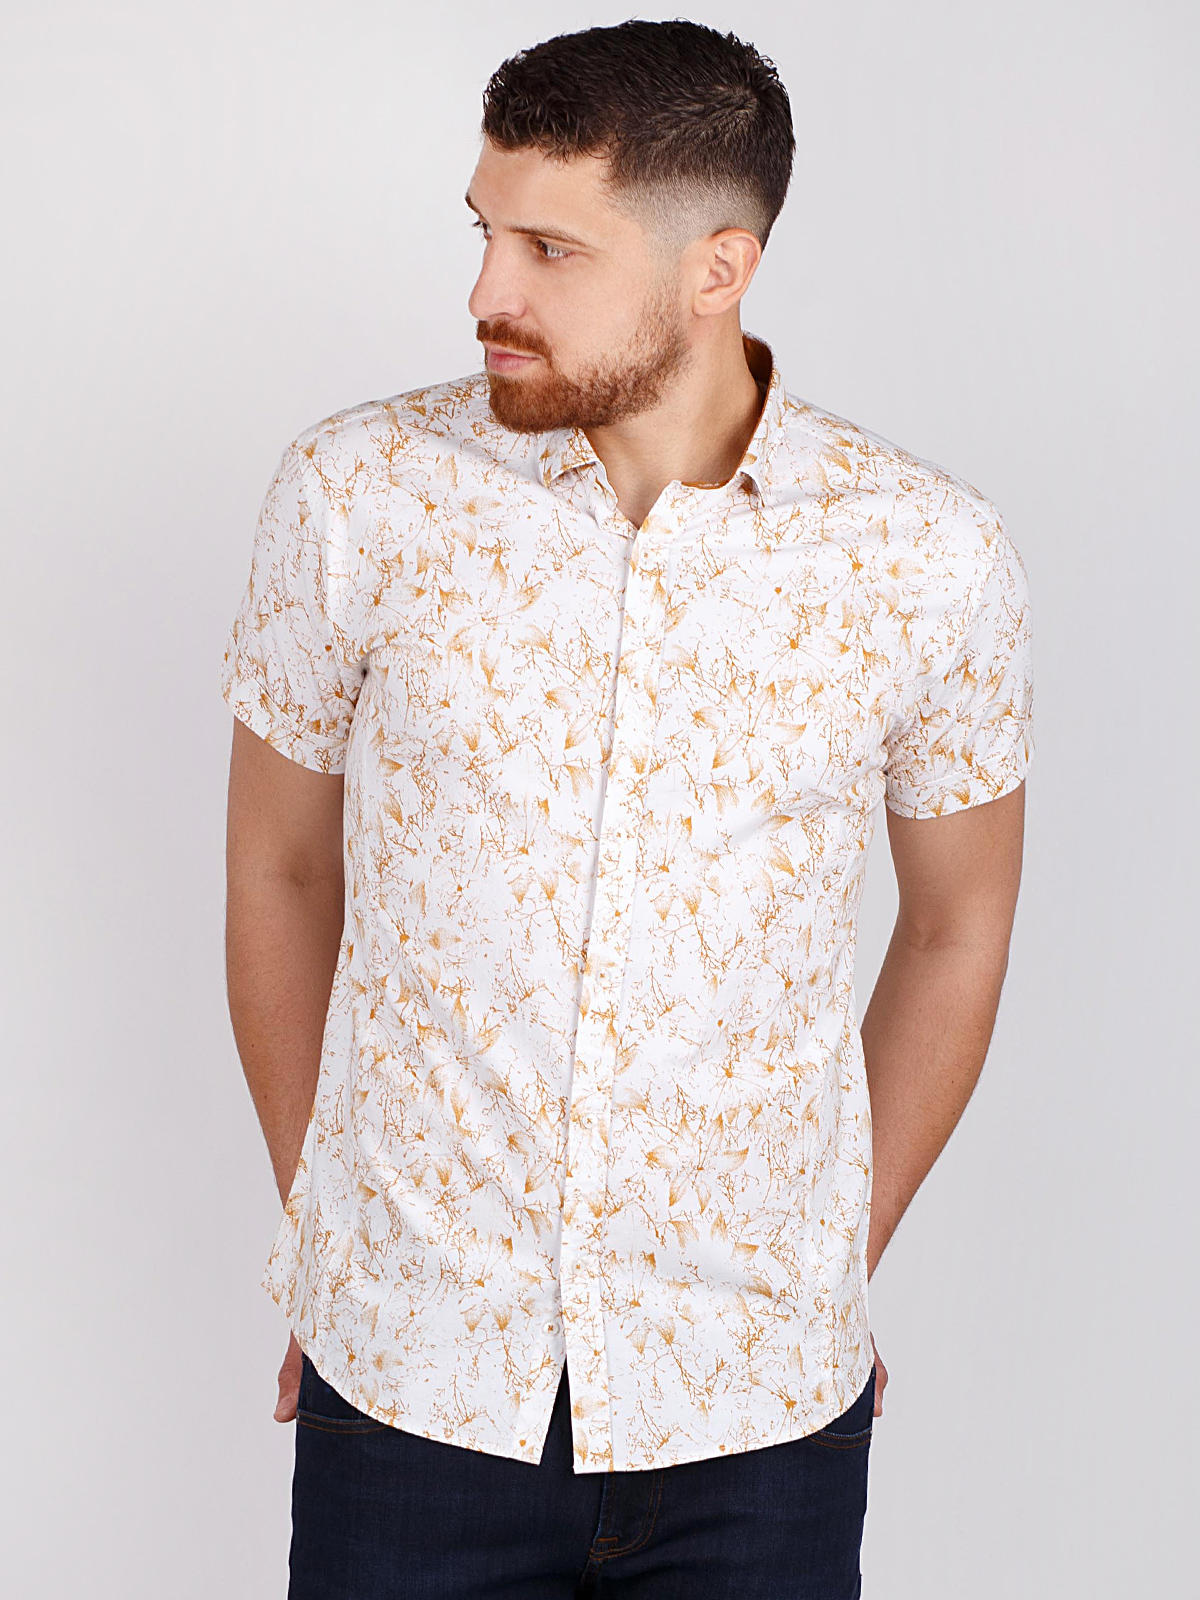 Бяла риза с флорален принт в цвят горчиц - 80219 29.00 лв img2